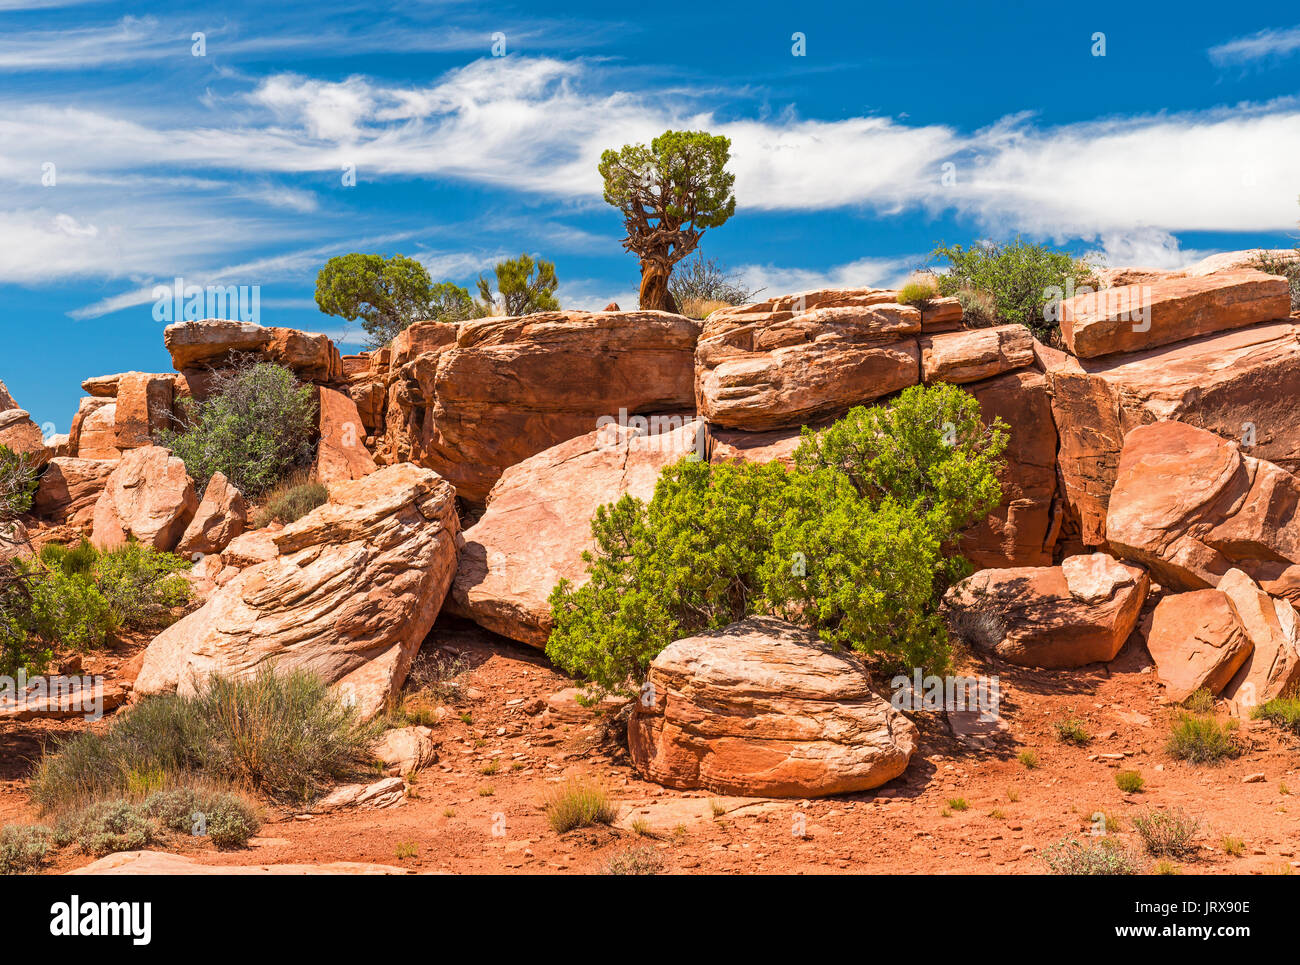 Ampio angolo di paesaggio di rocce di arenaria e vegetazione (alberi, arbusti ed erba) all'interno del parco nazionale di Canyonlands vicino a Moab, dello stato dello Utah, Stati Uniti d'America. Foto Stock